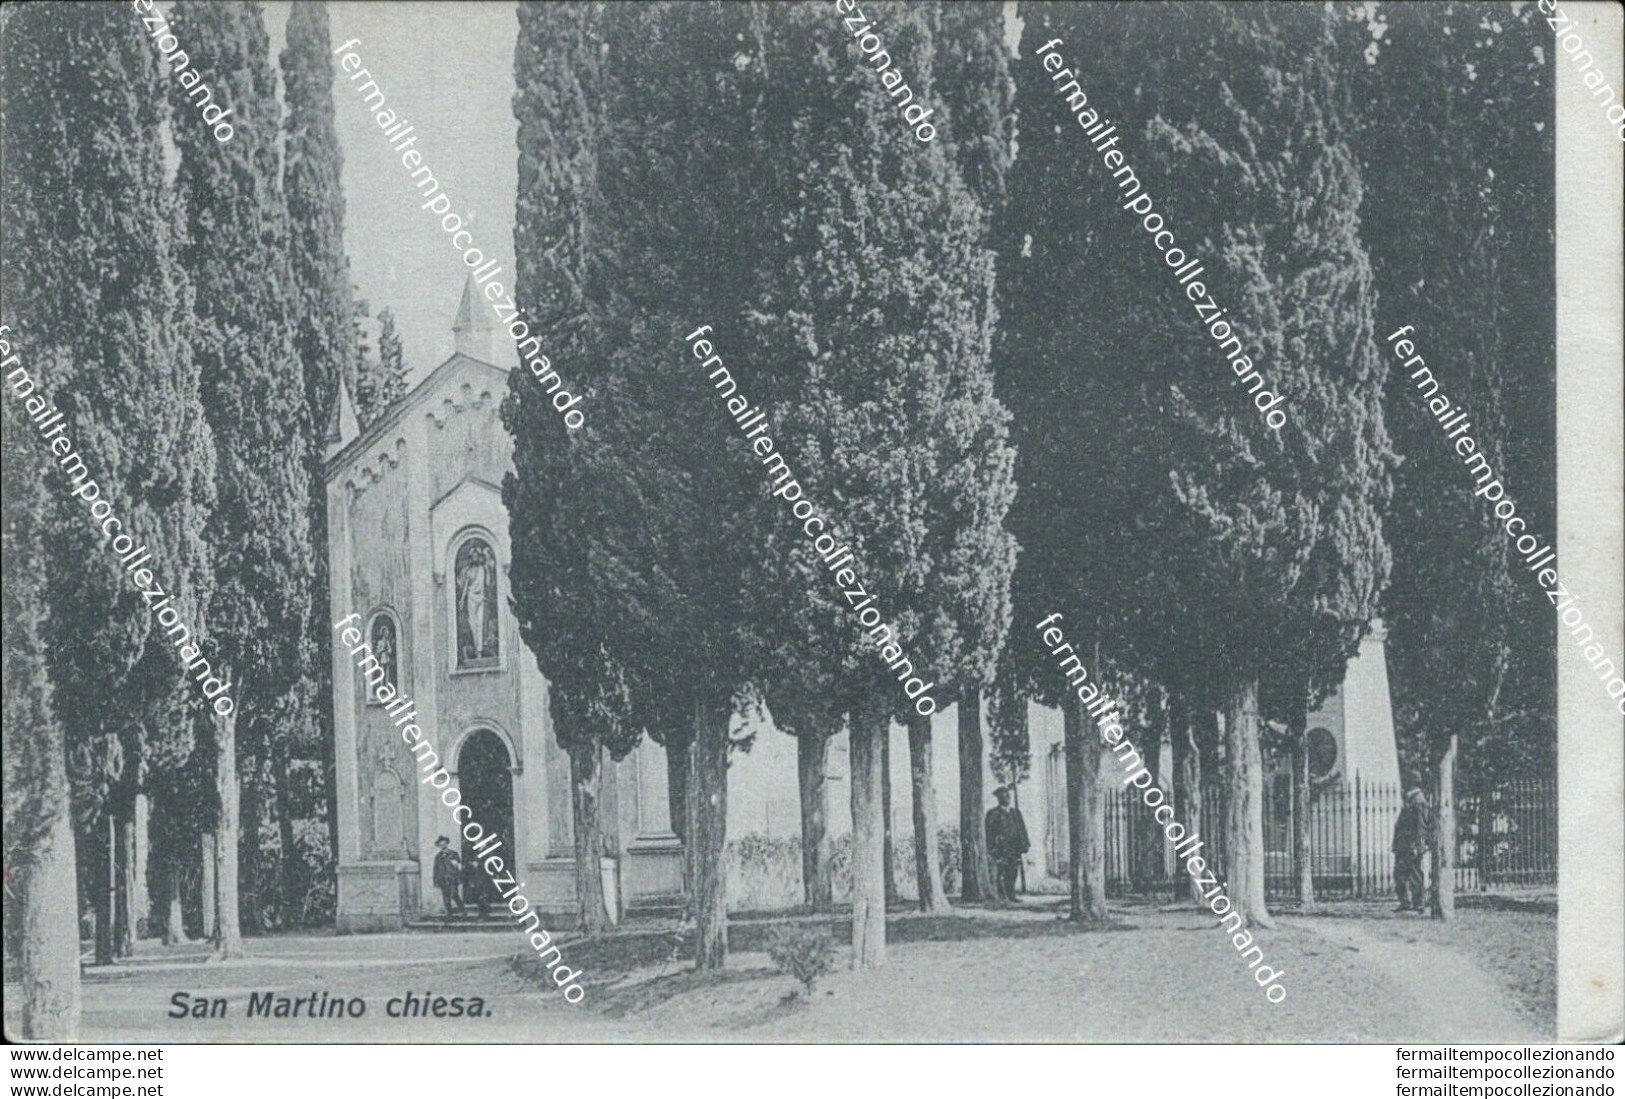 Bb280 Cartolina S.martino Chiesa Brescia Lombardia - Brescia